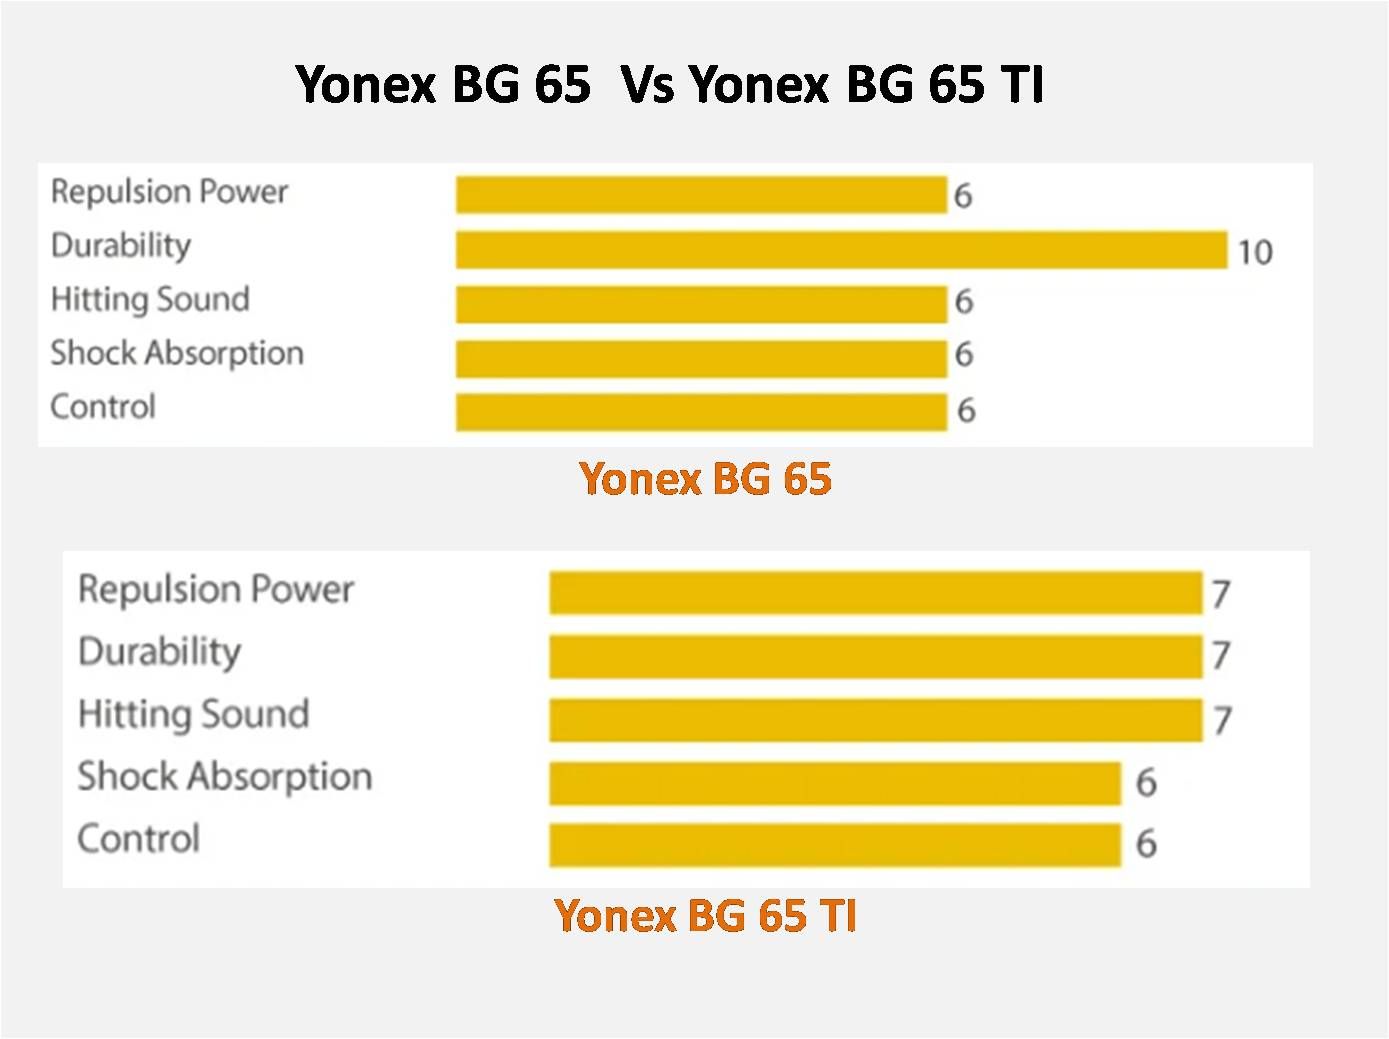 Yonex_BG_65_vs_Yonex_BG_65_TI_comparision